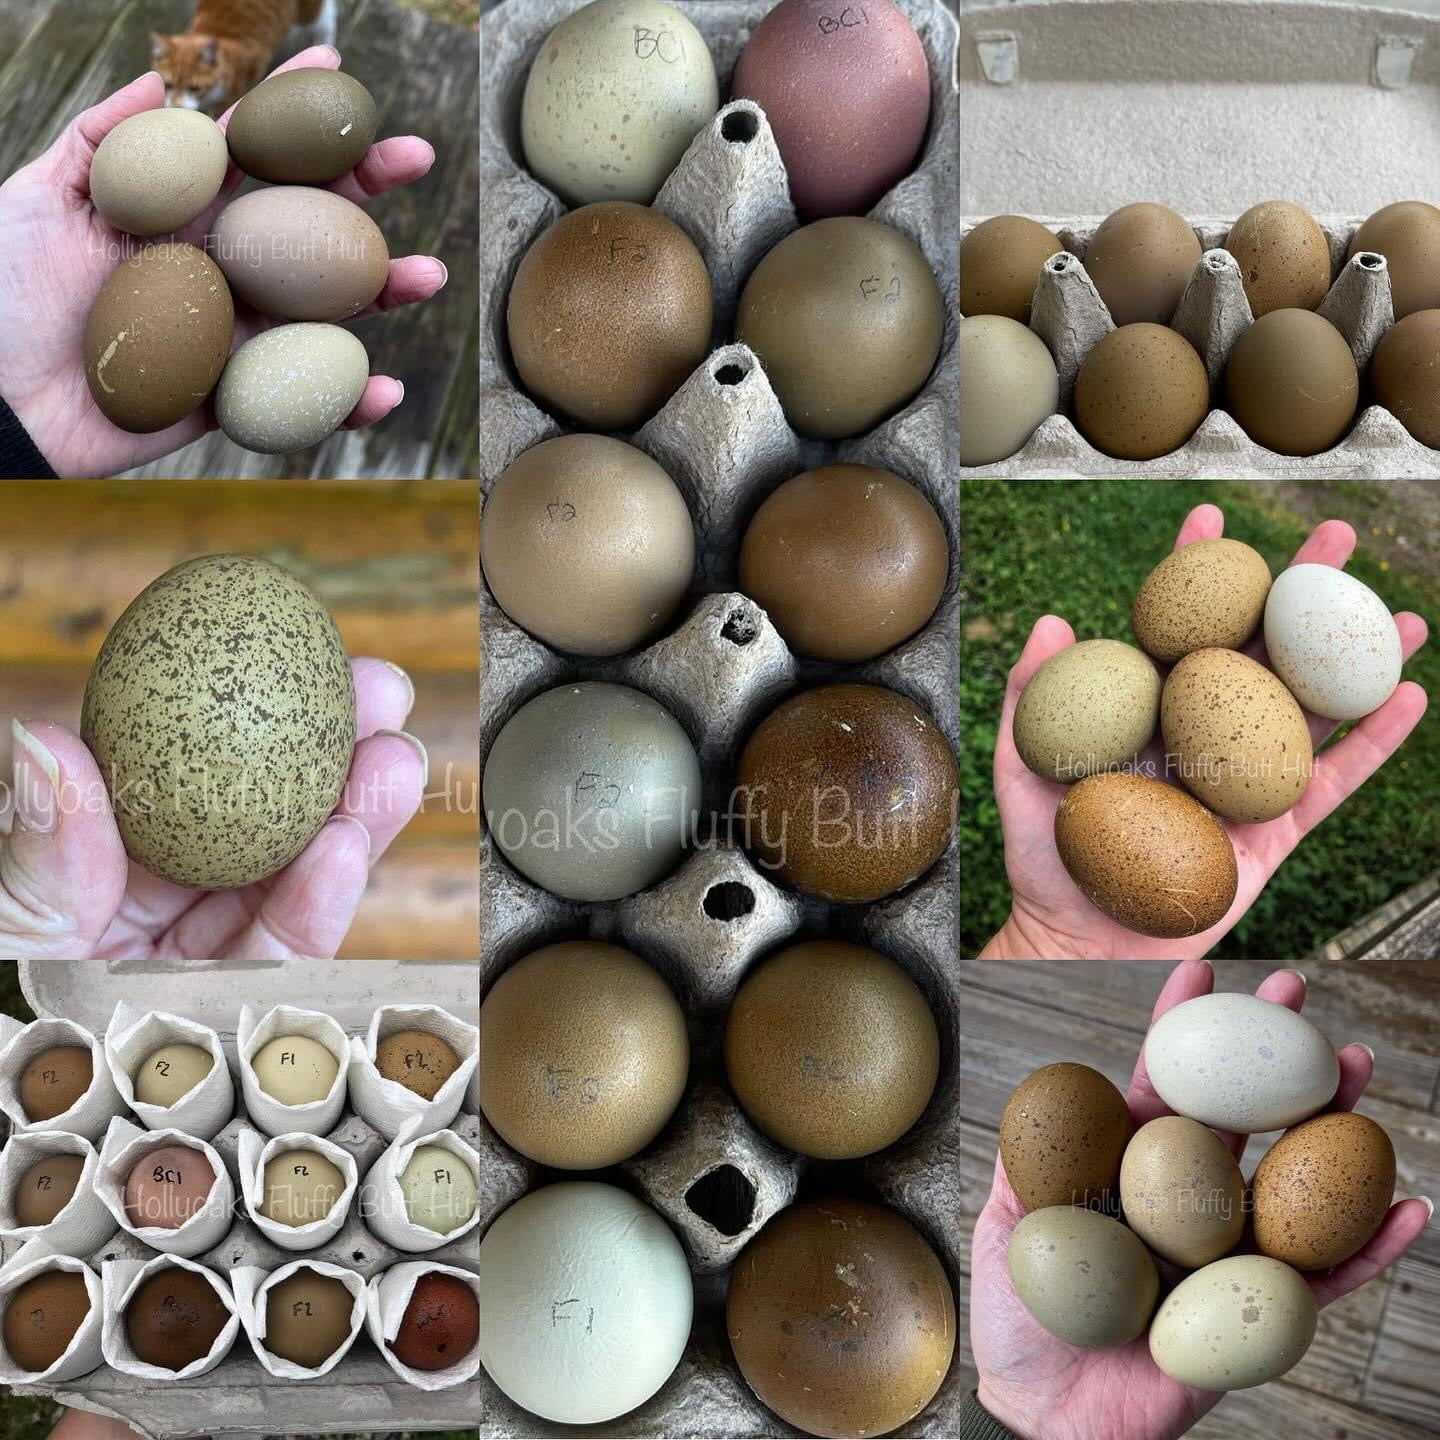 (6) Multigen Olive Egger Hatching Eggs